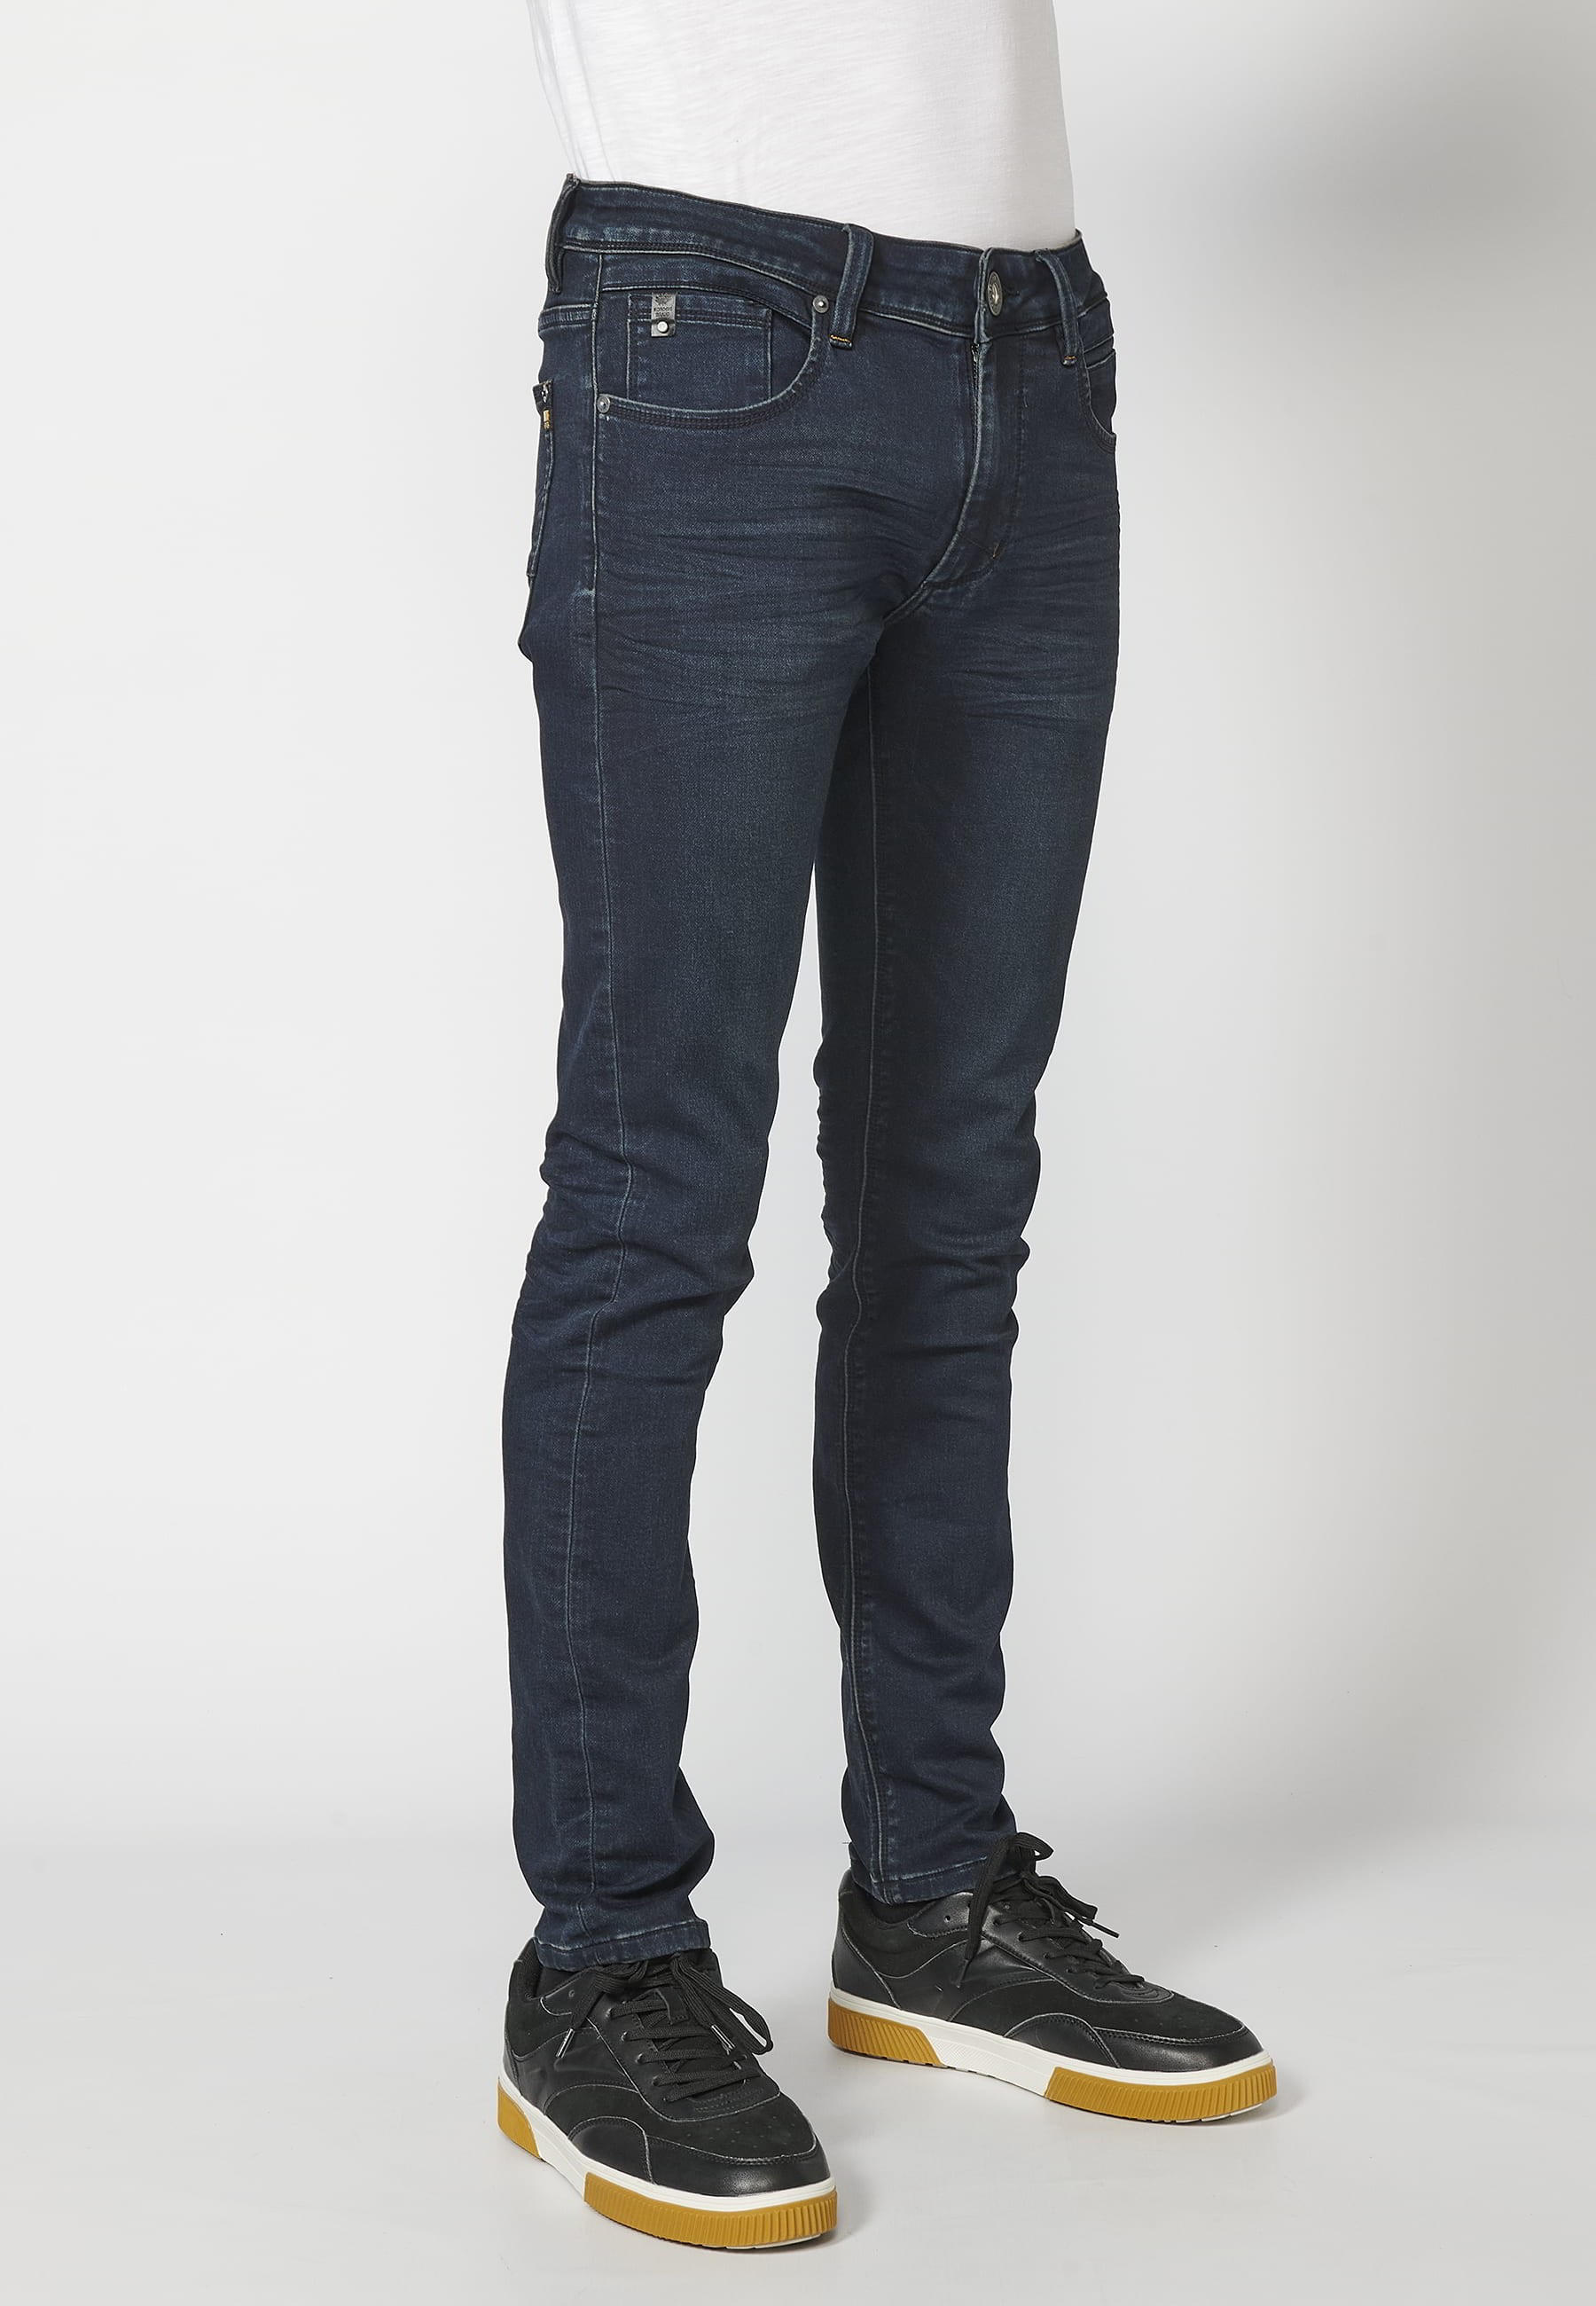 Pantalon Jean long coupe slim, couleur Bleu Foncé pour Homme 4